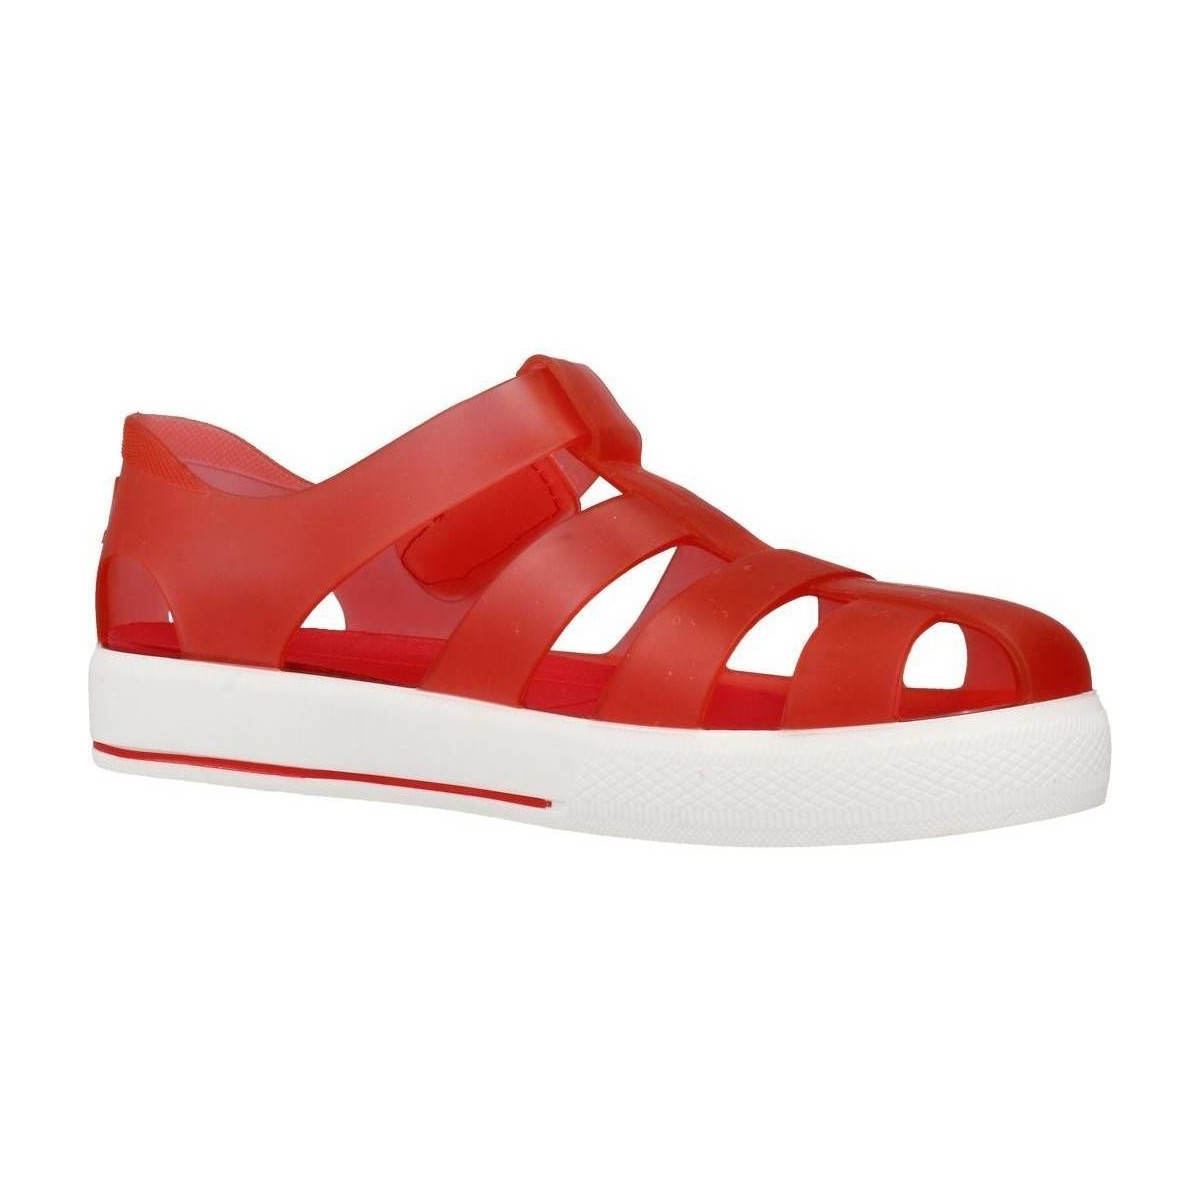 Sapatos Rapariga Chinelos IGOR S10171 Vermelho